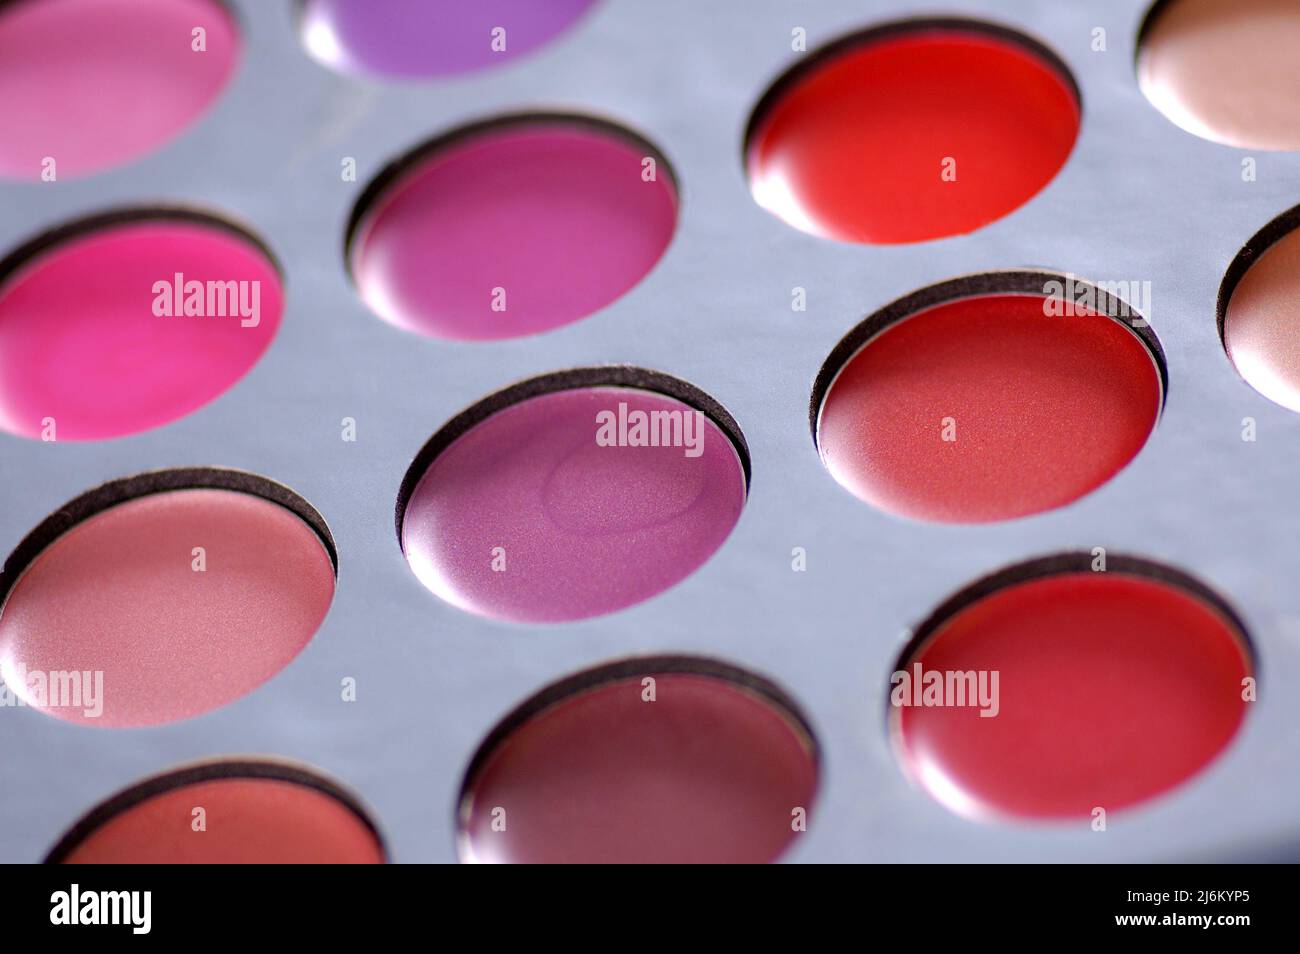 Bright colored lipstick palette, close up Stock Photo